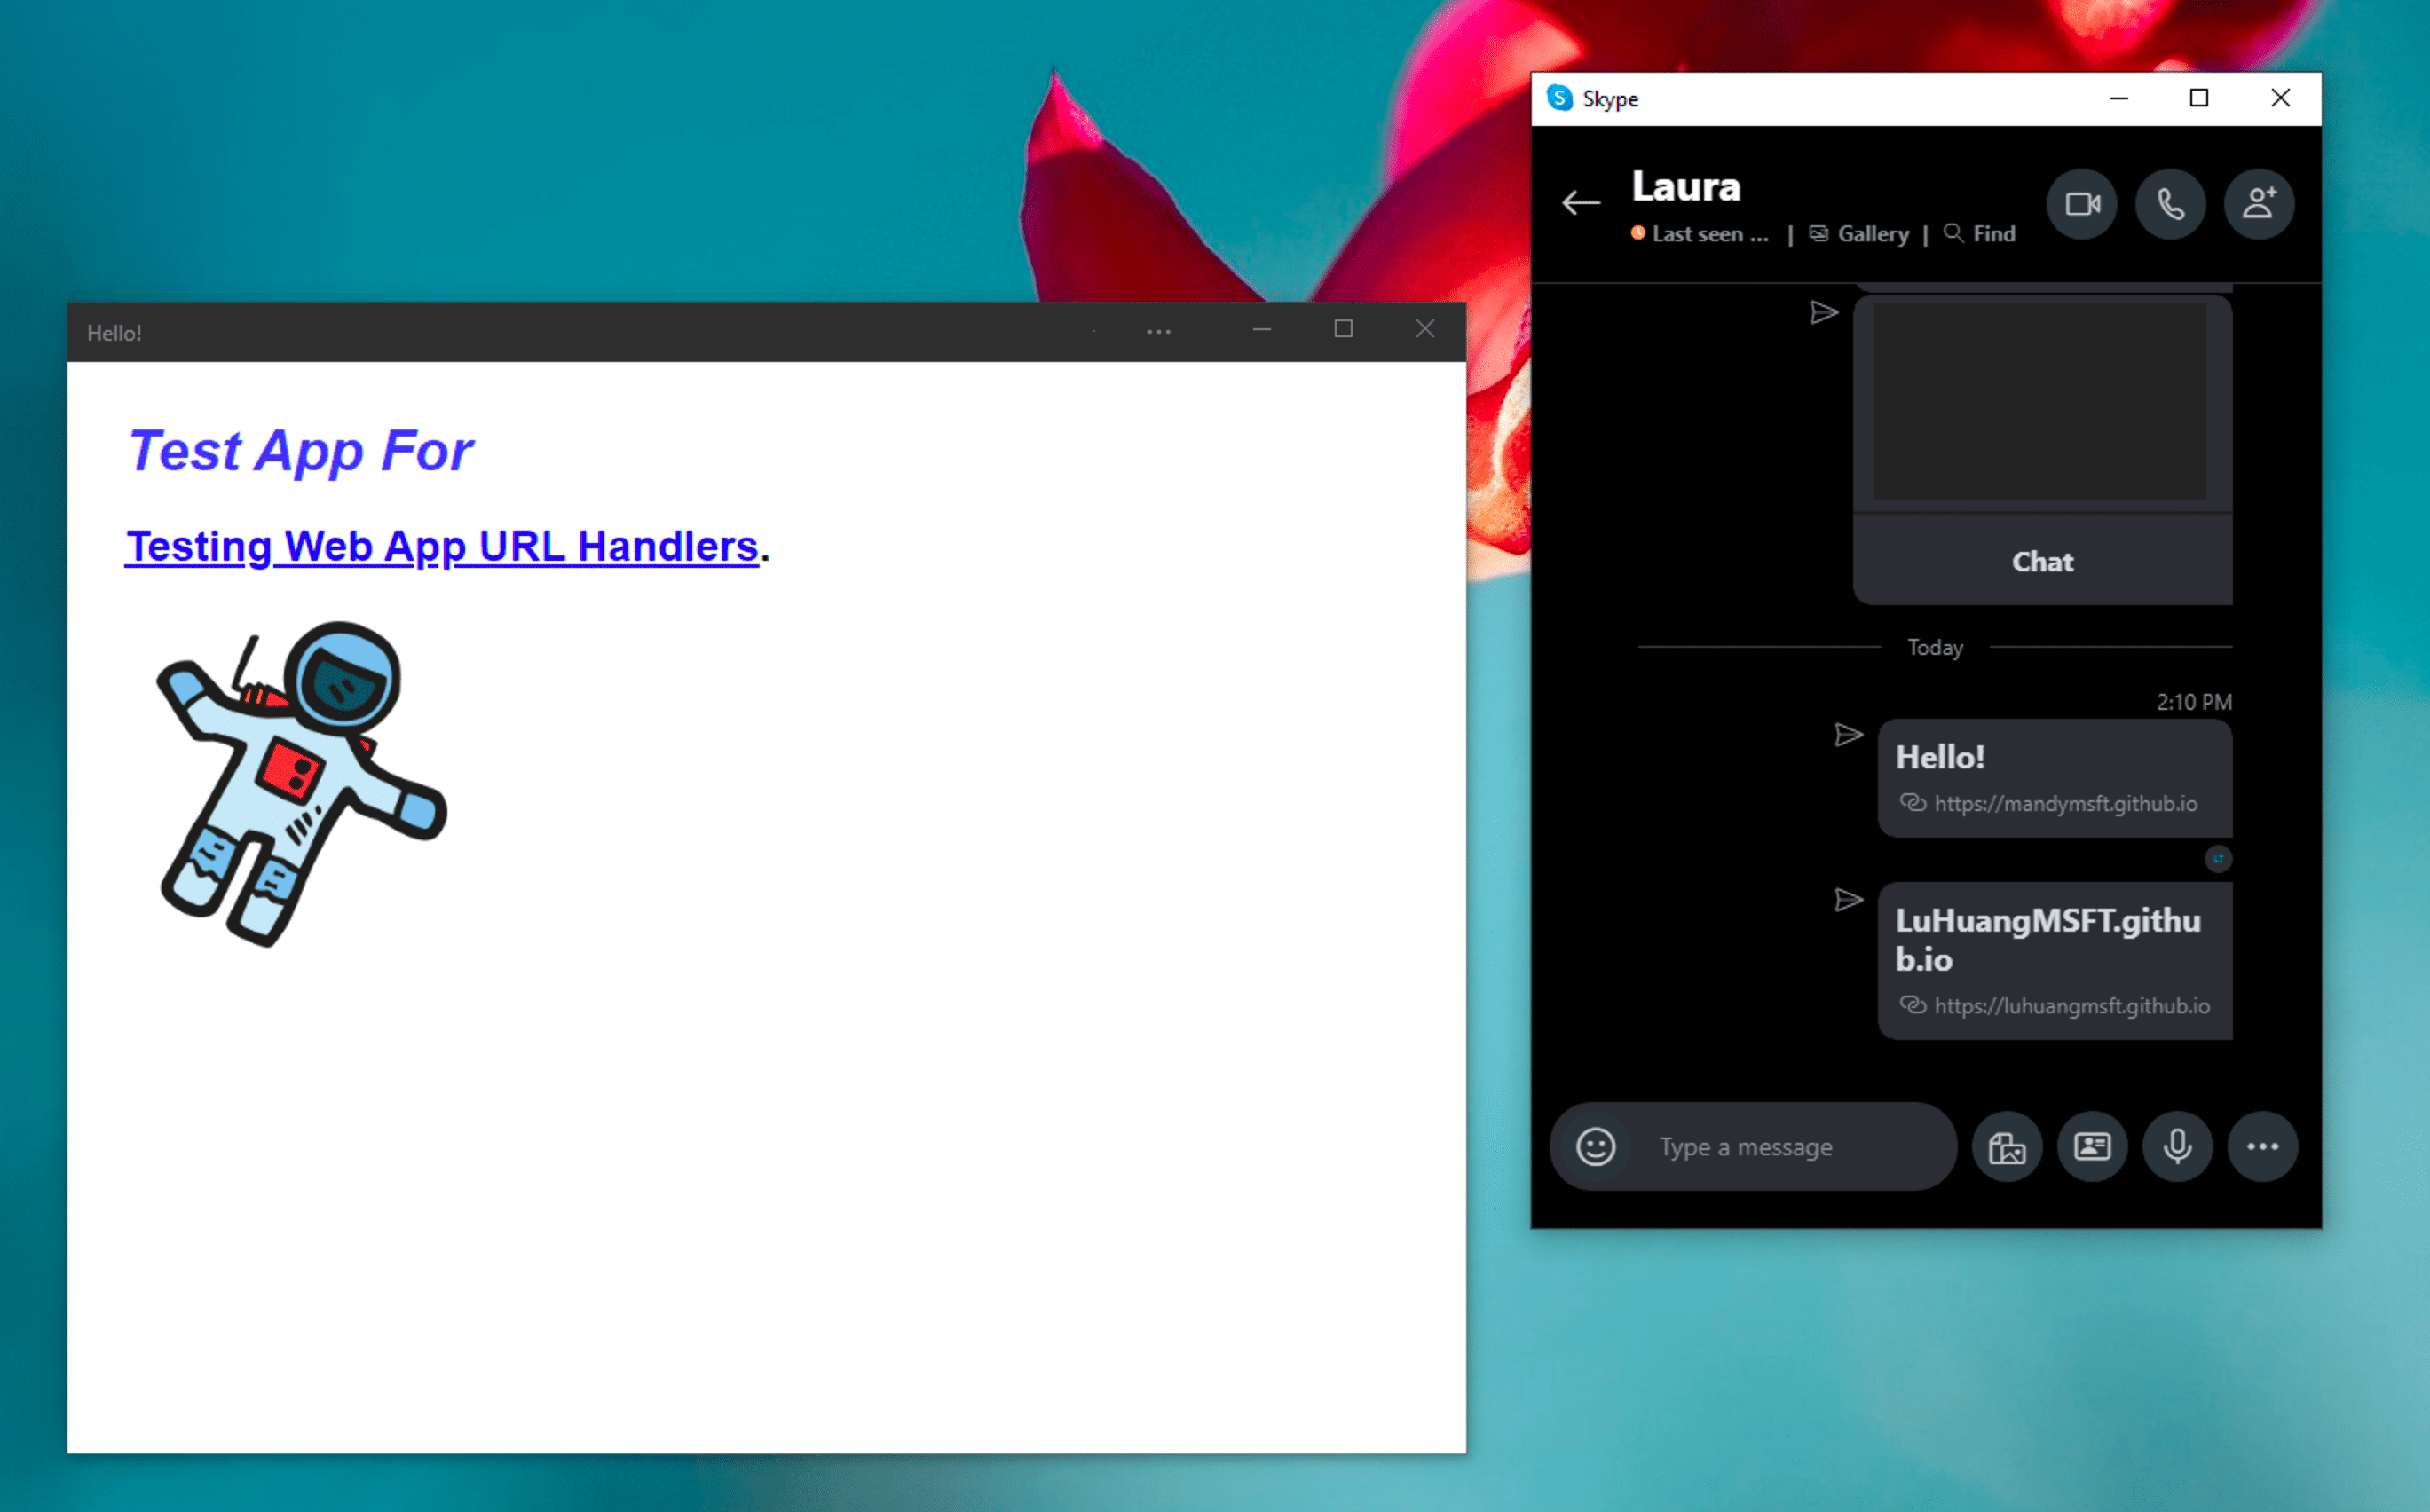 Приложение обмена мгновенными сообщениями Windows Skype рядом с установленным демонстрационным PWA, которое открывается в автономном режиме после щелчка по обрабатываемой им ссылке в сообщении чата Skype.